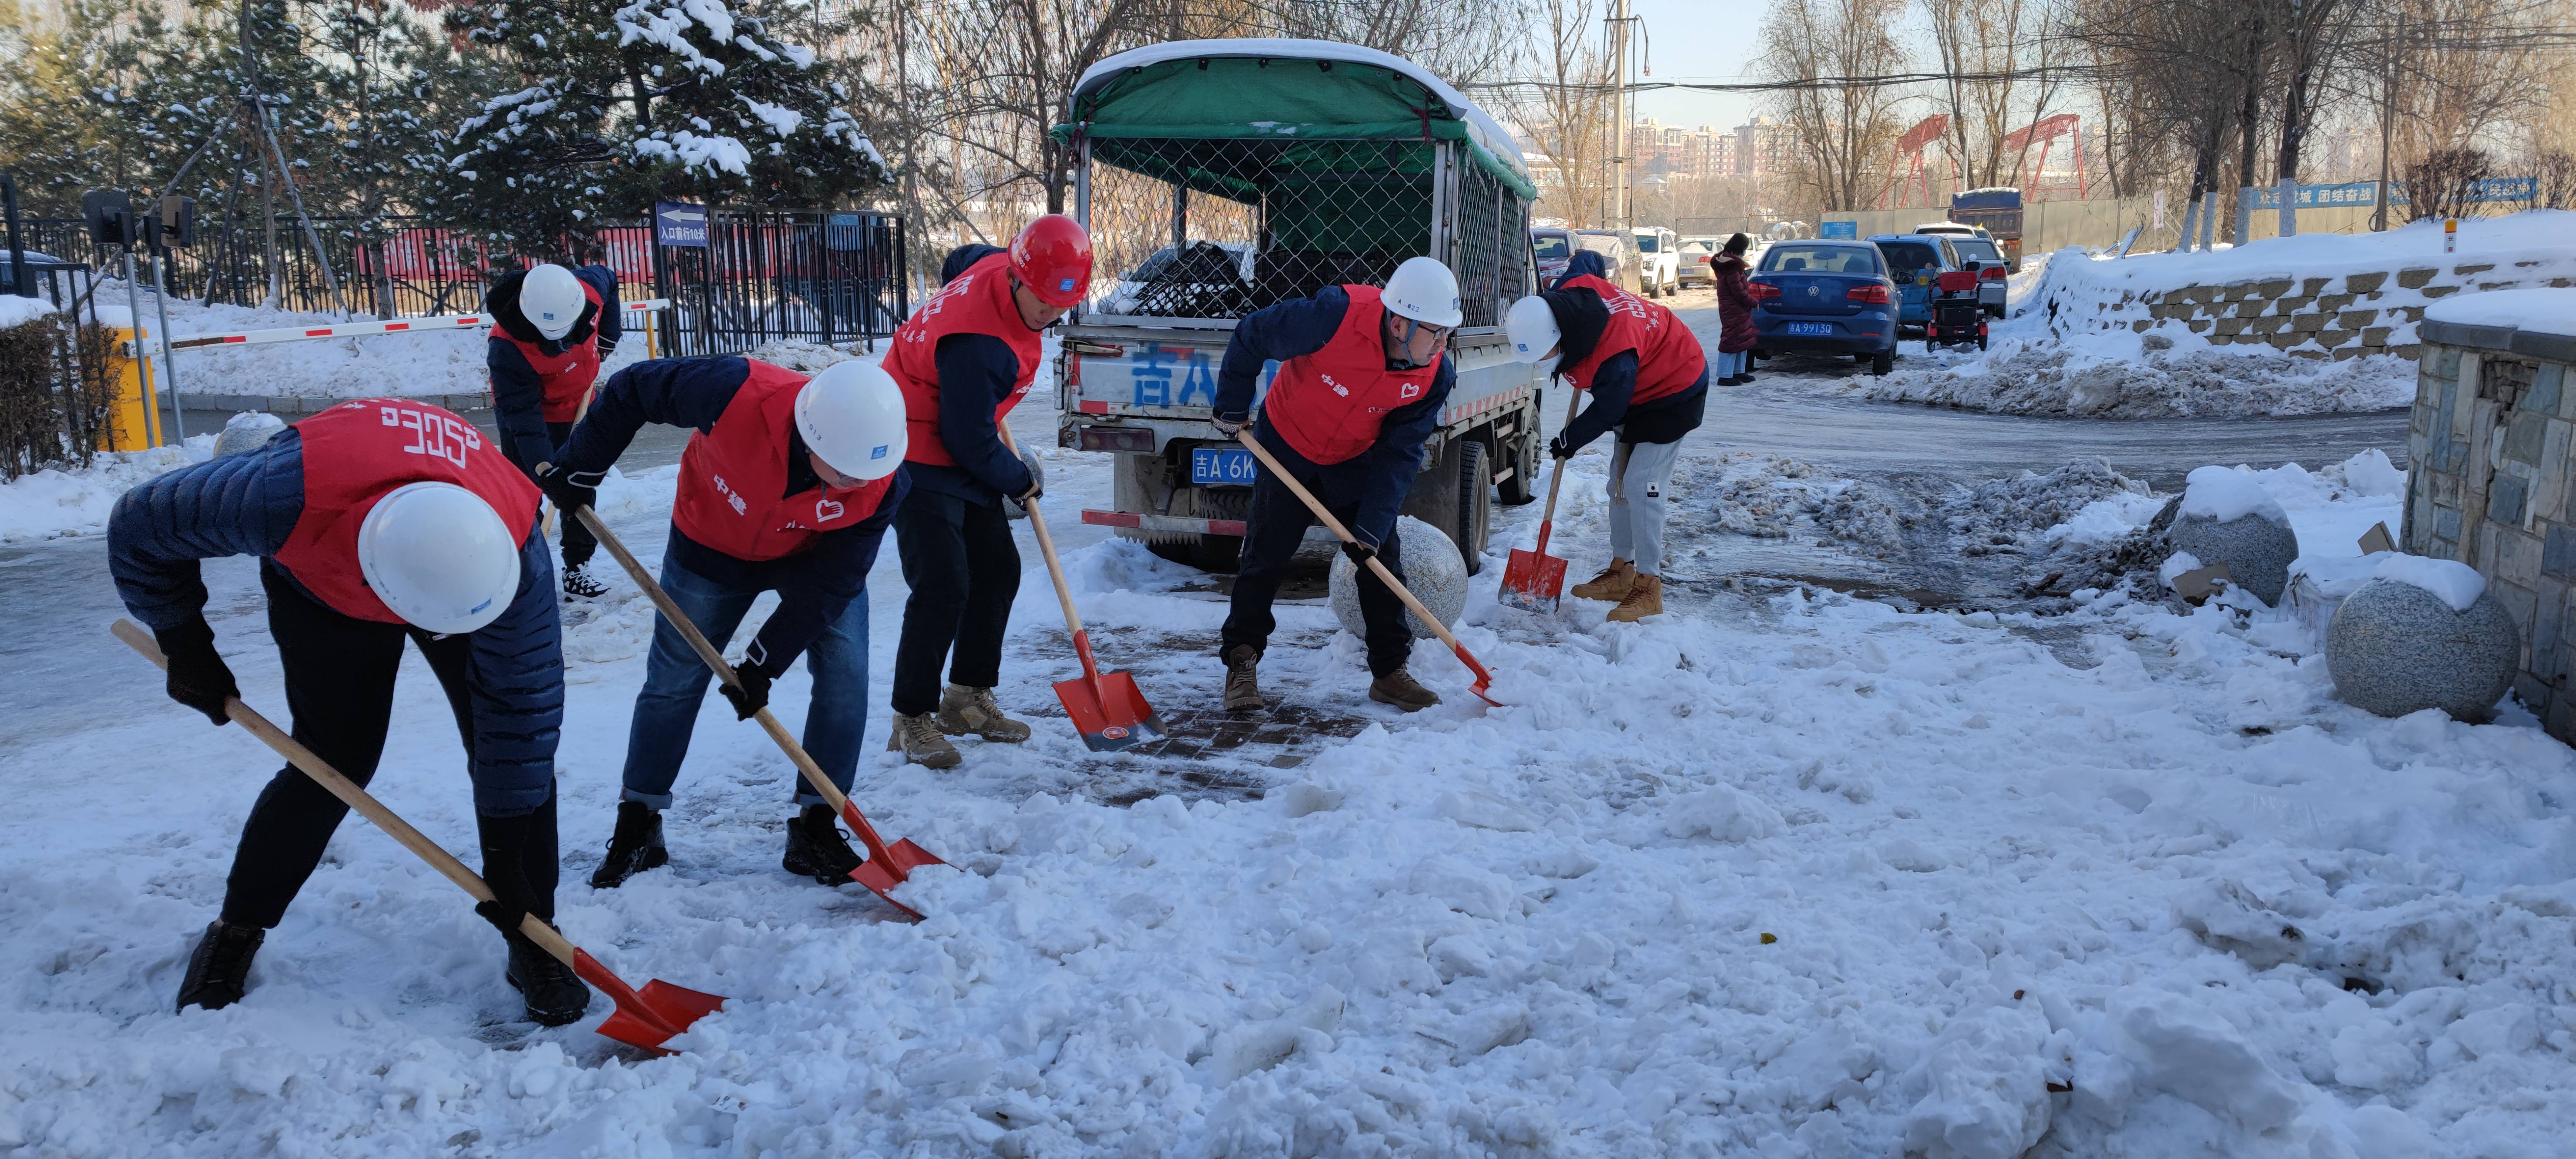 志愿服务照片冬季图片